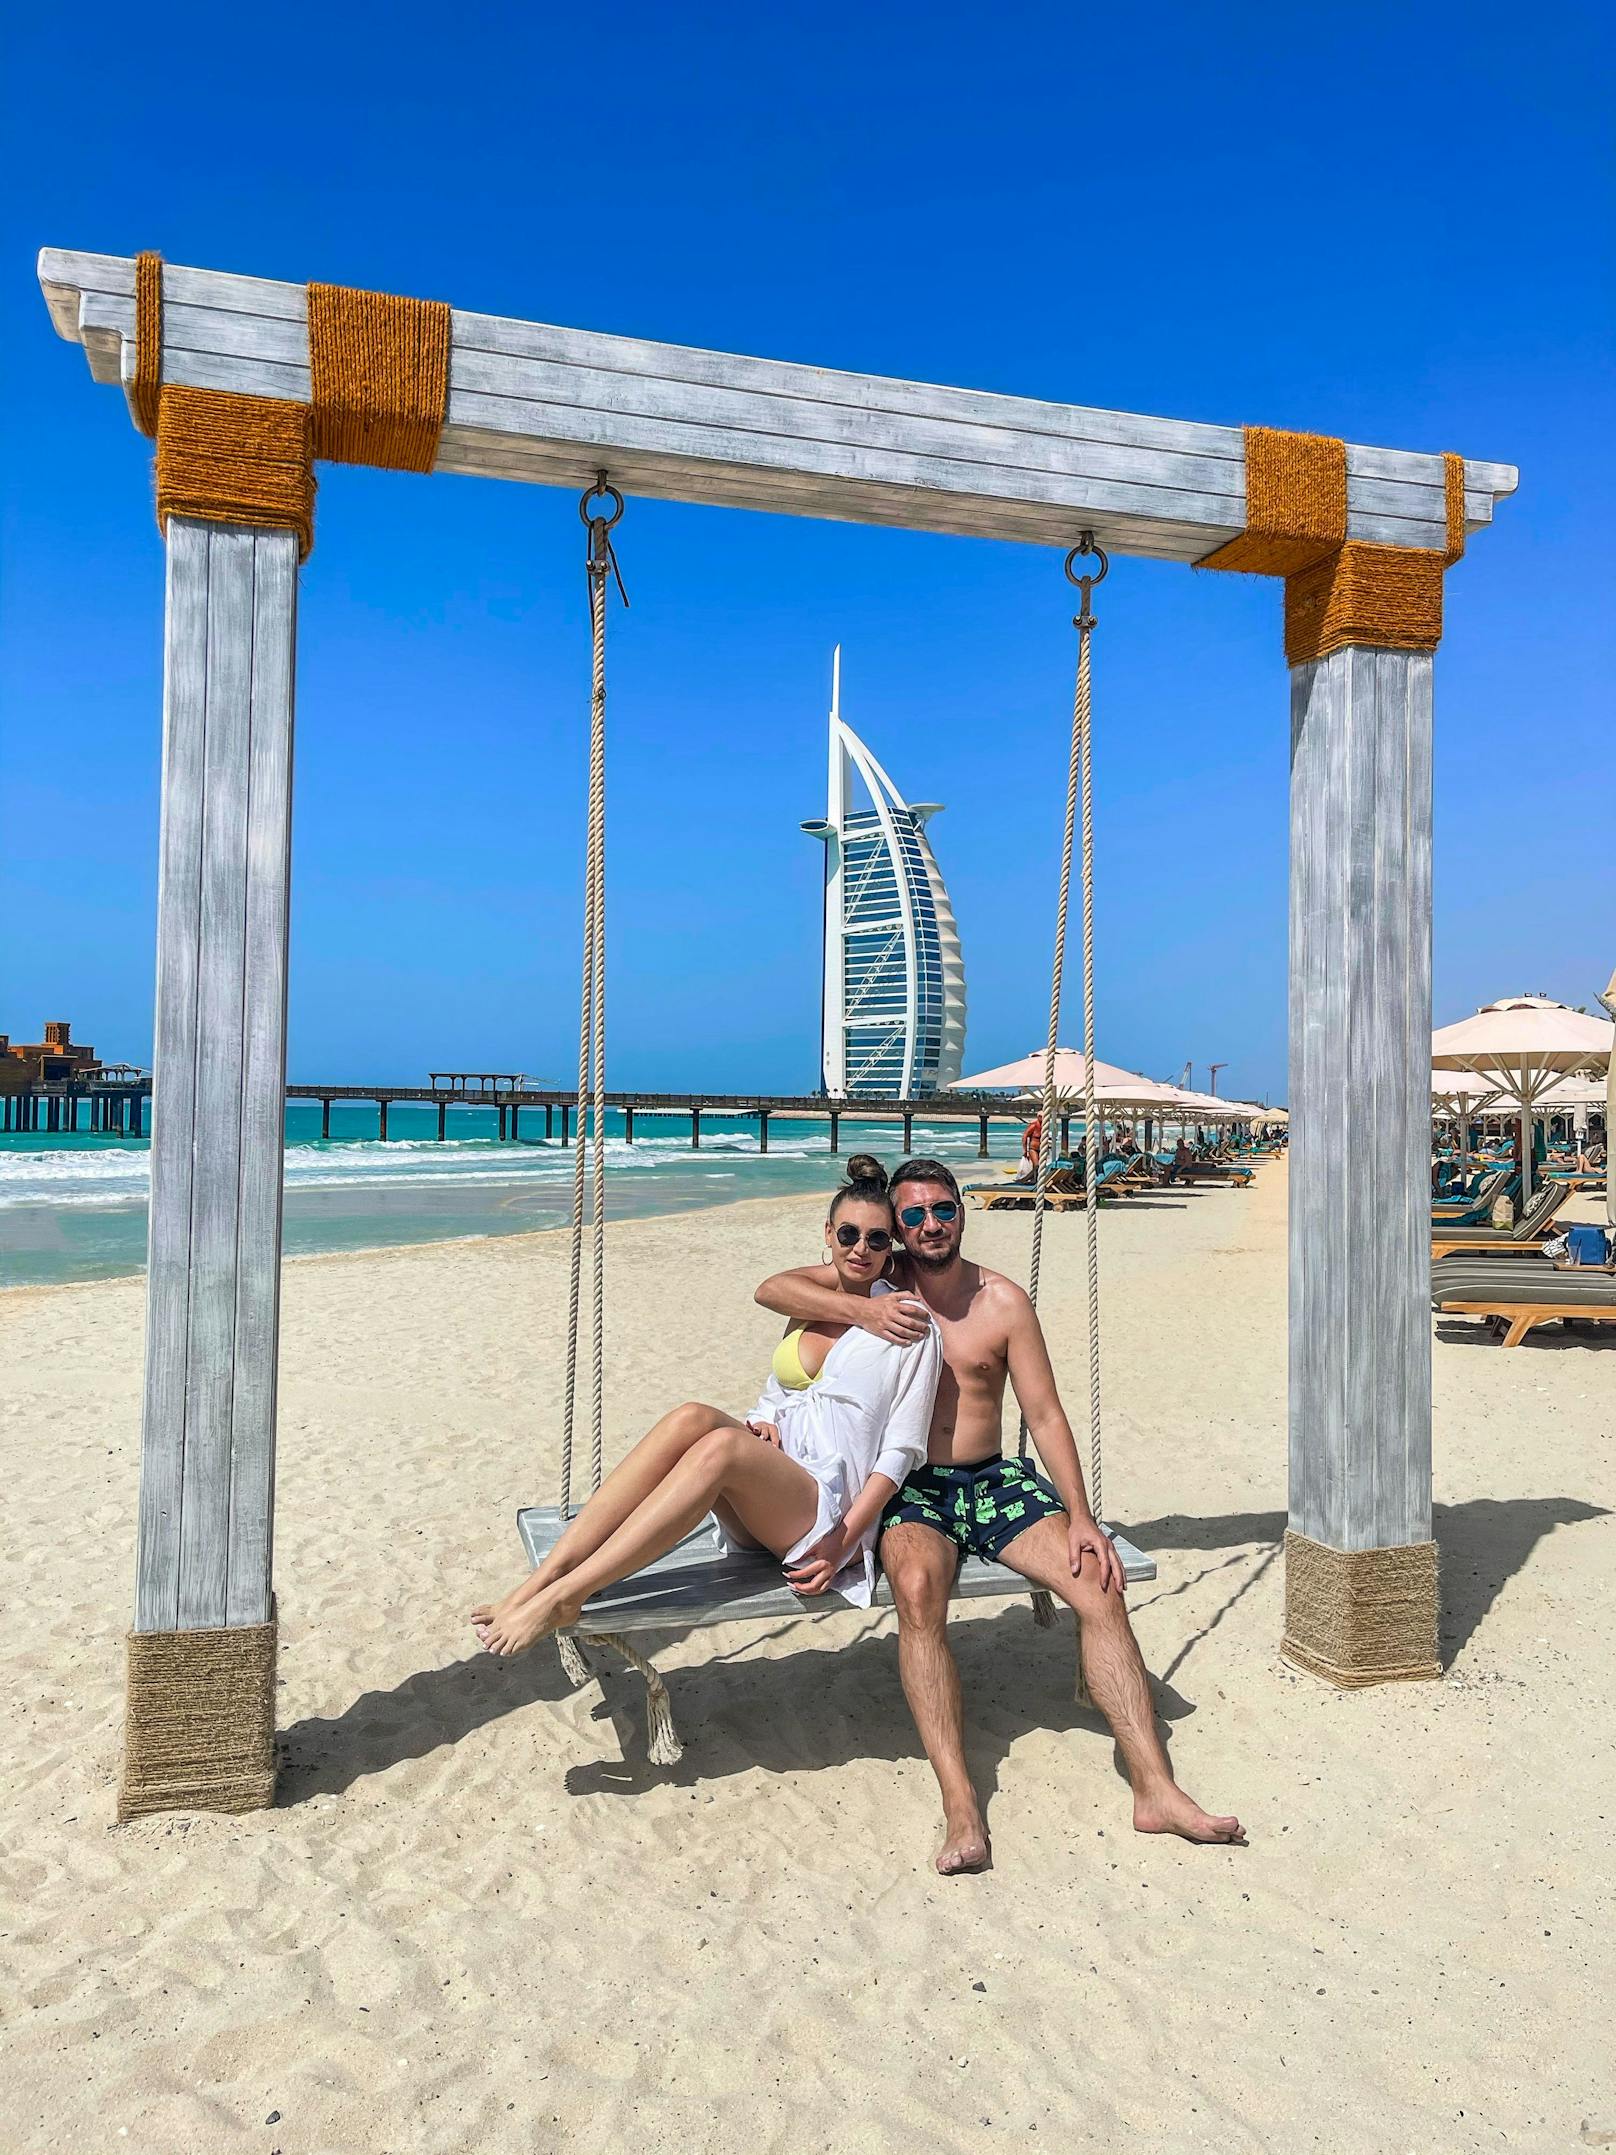 Natürlich jettet das Paar auch gerne mal nach Dubai, doch dort wird nicht einfach nur Urlaub gemacht, sondern in erster Linie ebenfalls an das Business gedacht.